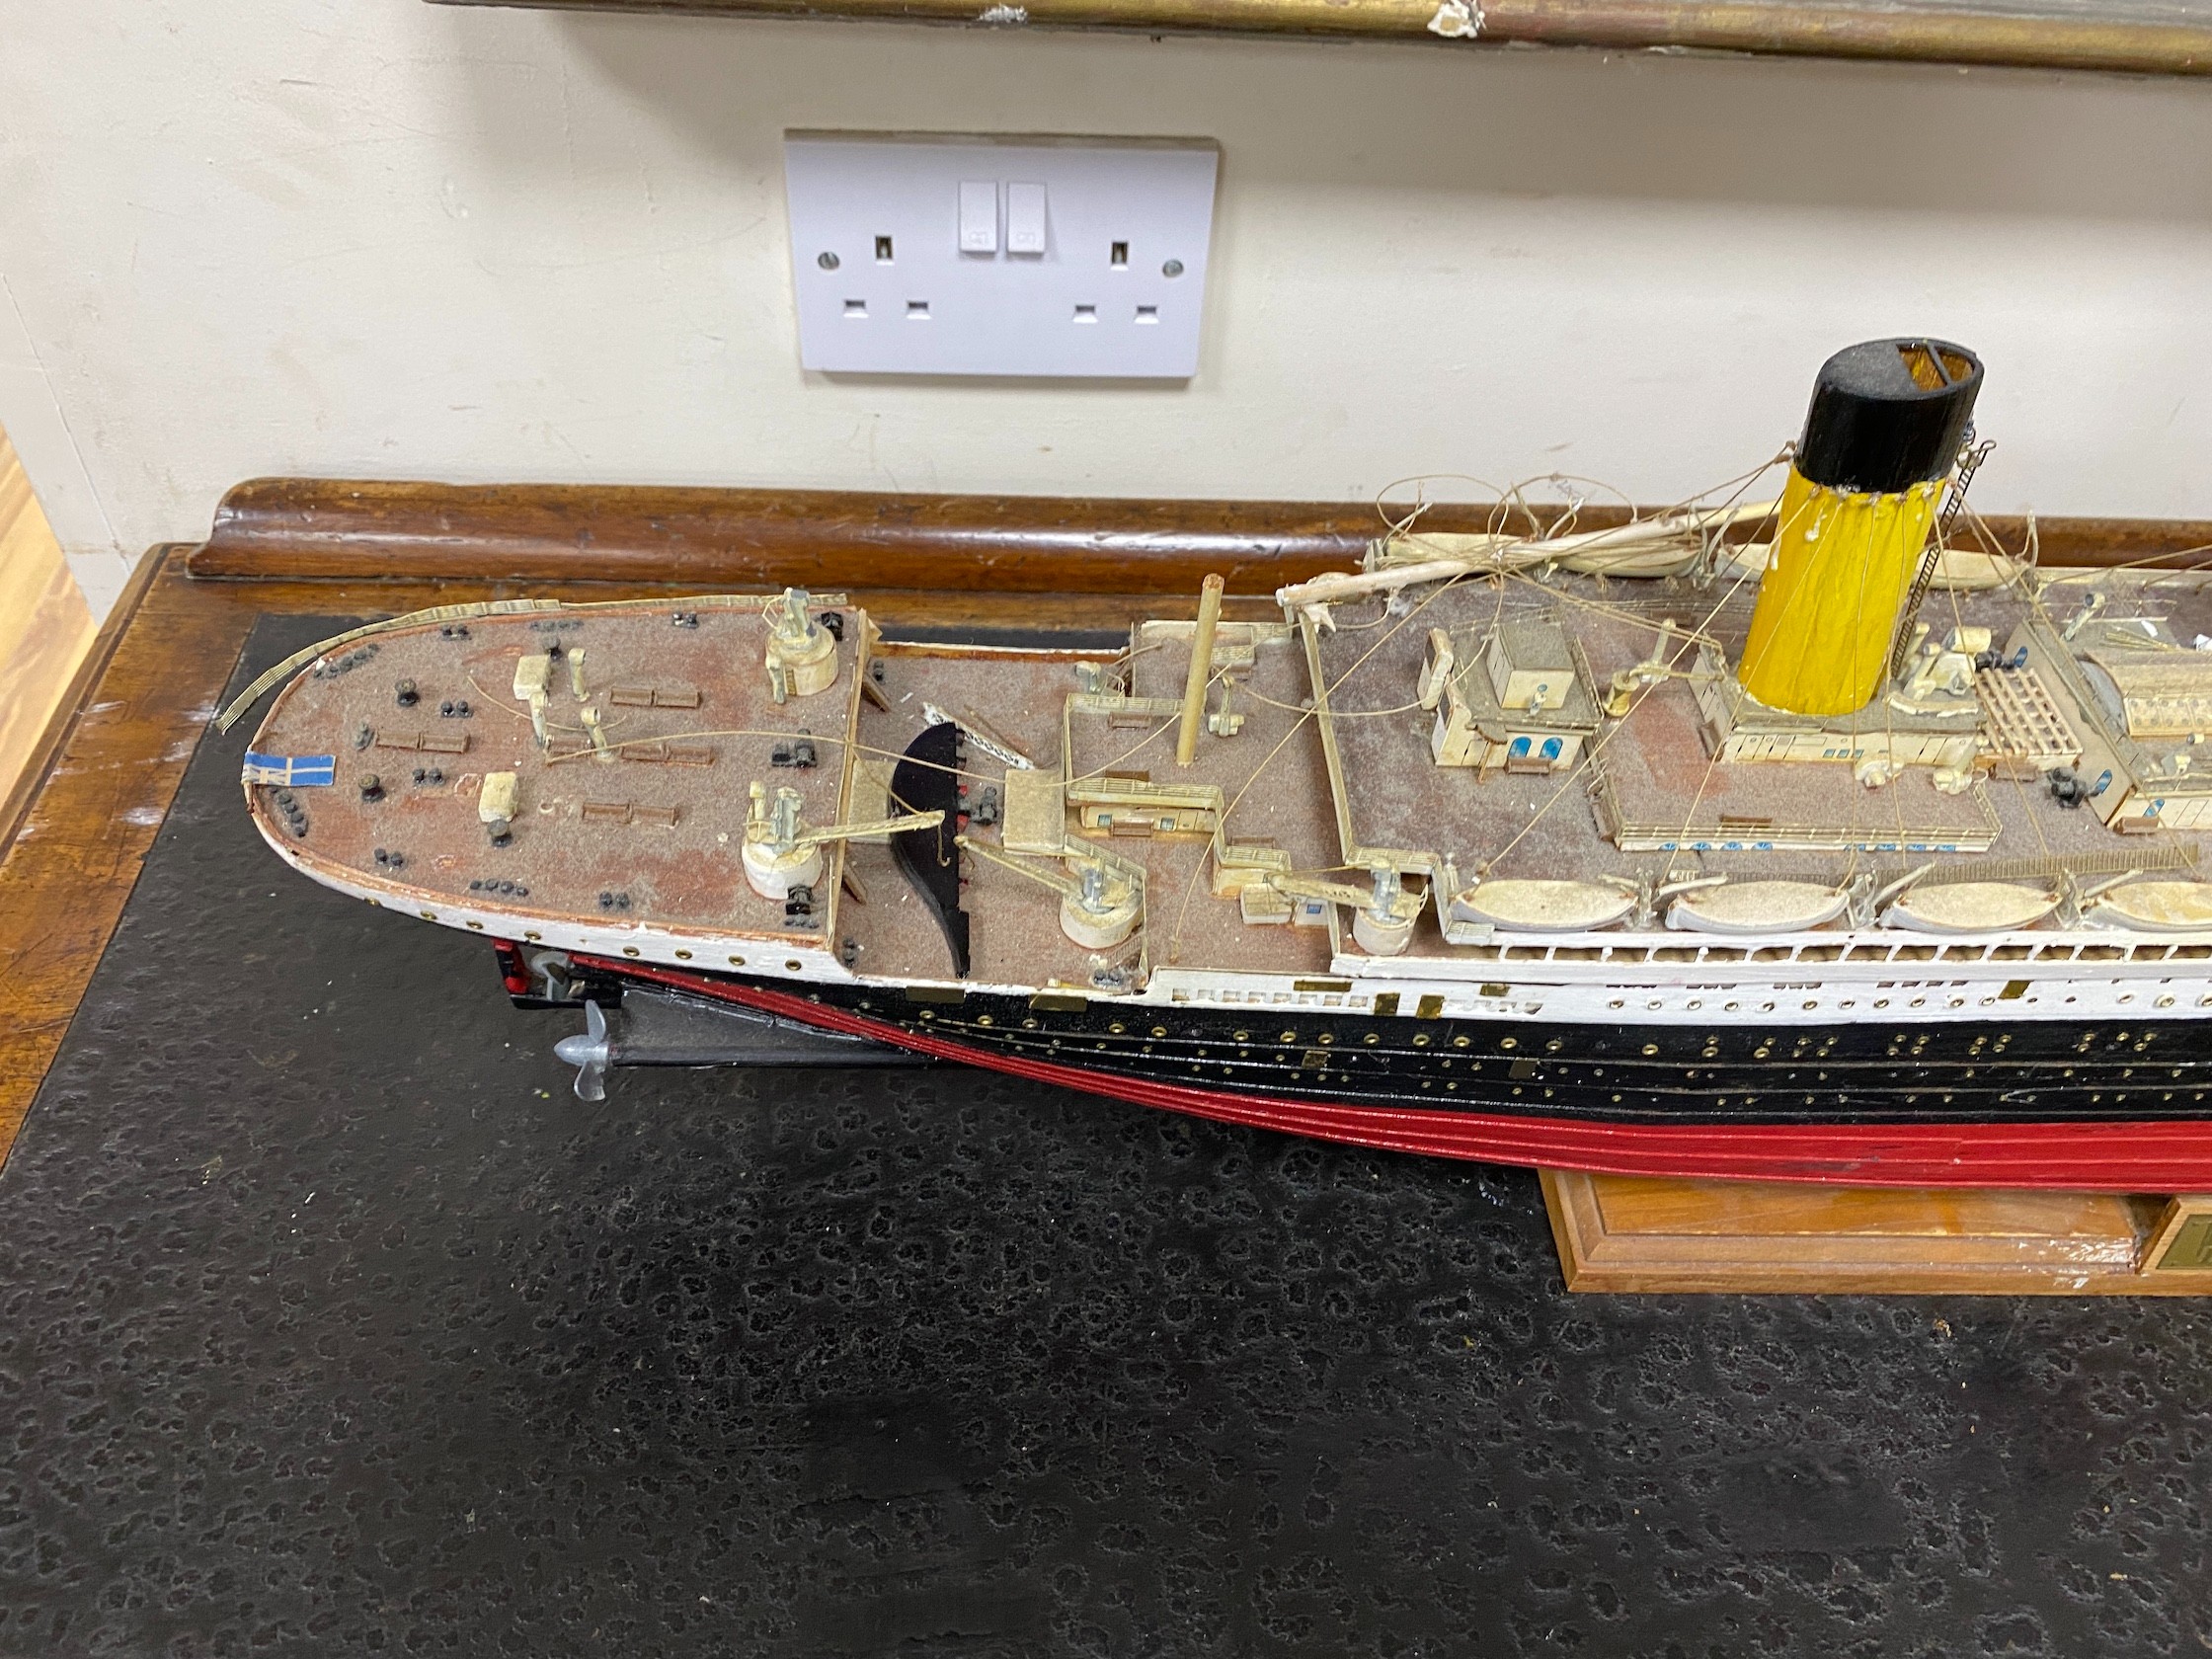 A kit built model of the Titanic, length 109cm